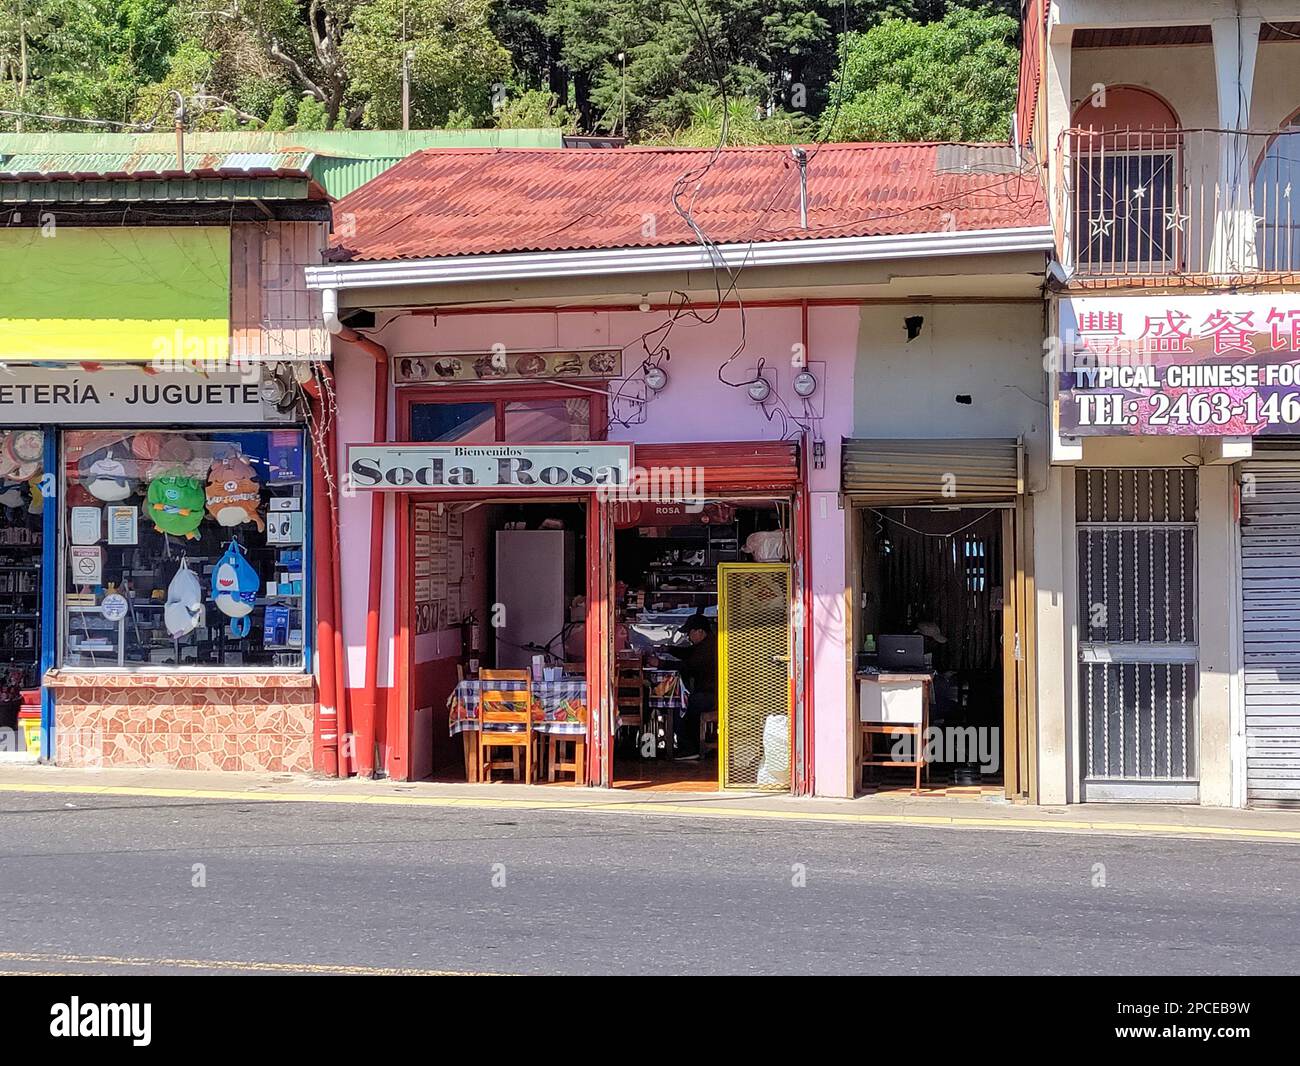 Zarcero, Costa Rica - Un tipico 'aps' costaricano, un piccolo ristorante in stile familiare che serve piatti tipici della Costa Rica a prezzi economici. Foto Stock